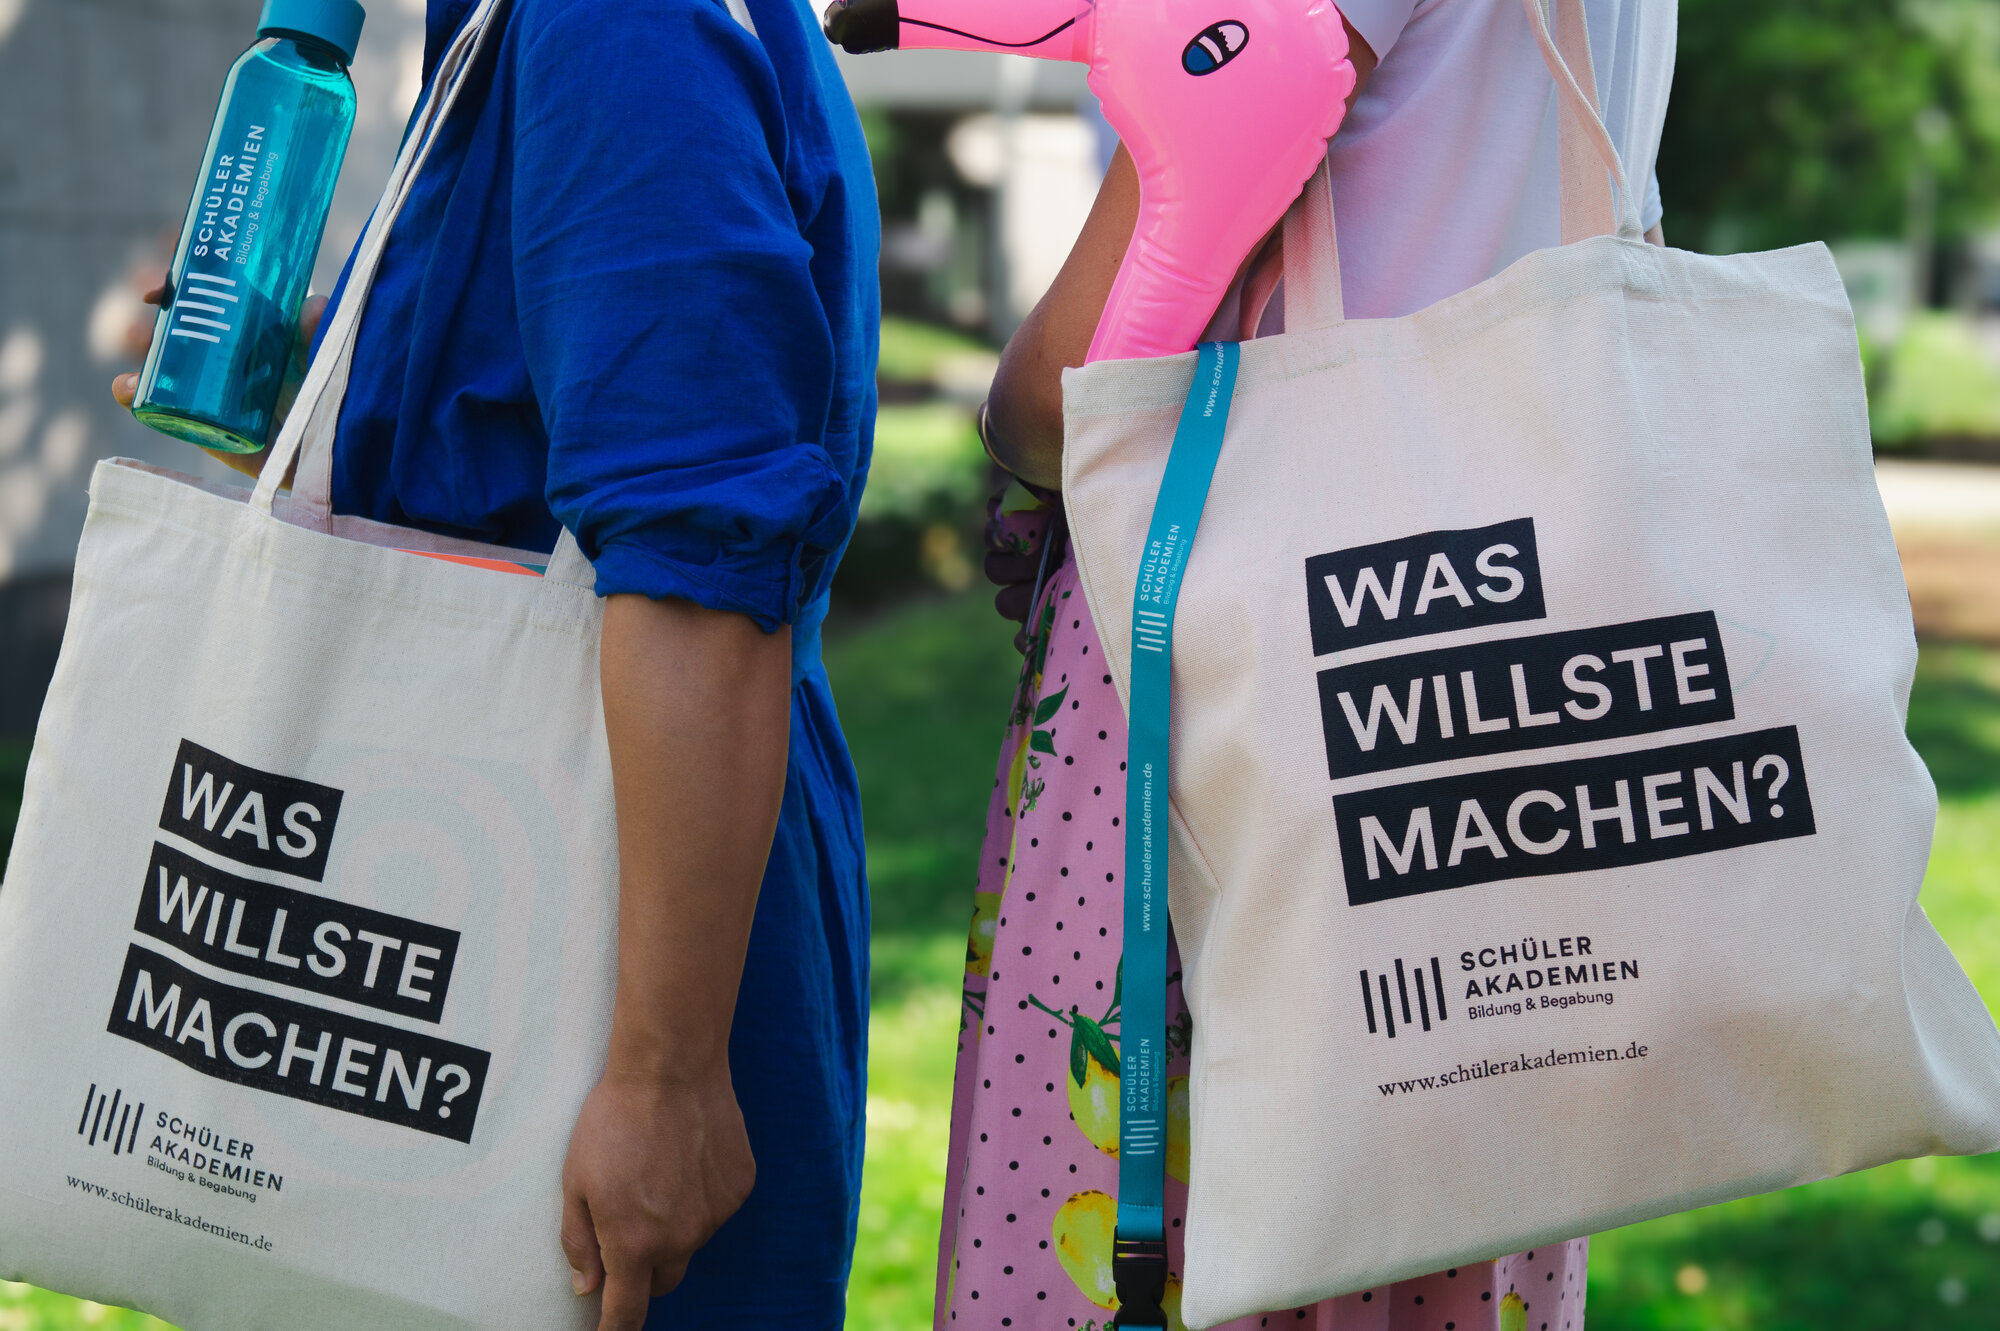 Zwei Personen tragen eine Jutetasche mit dem Aufdruck "Was willste machen?" und dem Logo der Schülerakademie. Aus einer Tasche ragt ein rosa Aufblas-Flamingo. Die linke Person hält eine Trinkflasche mit dem Logo der Schülerakademie. 